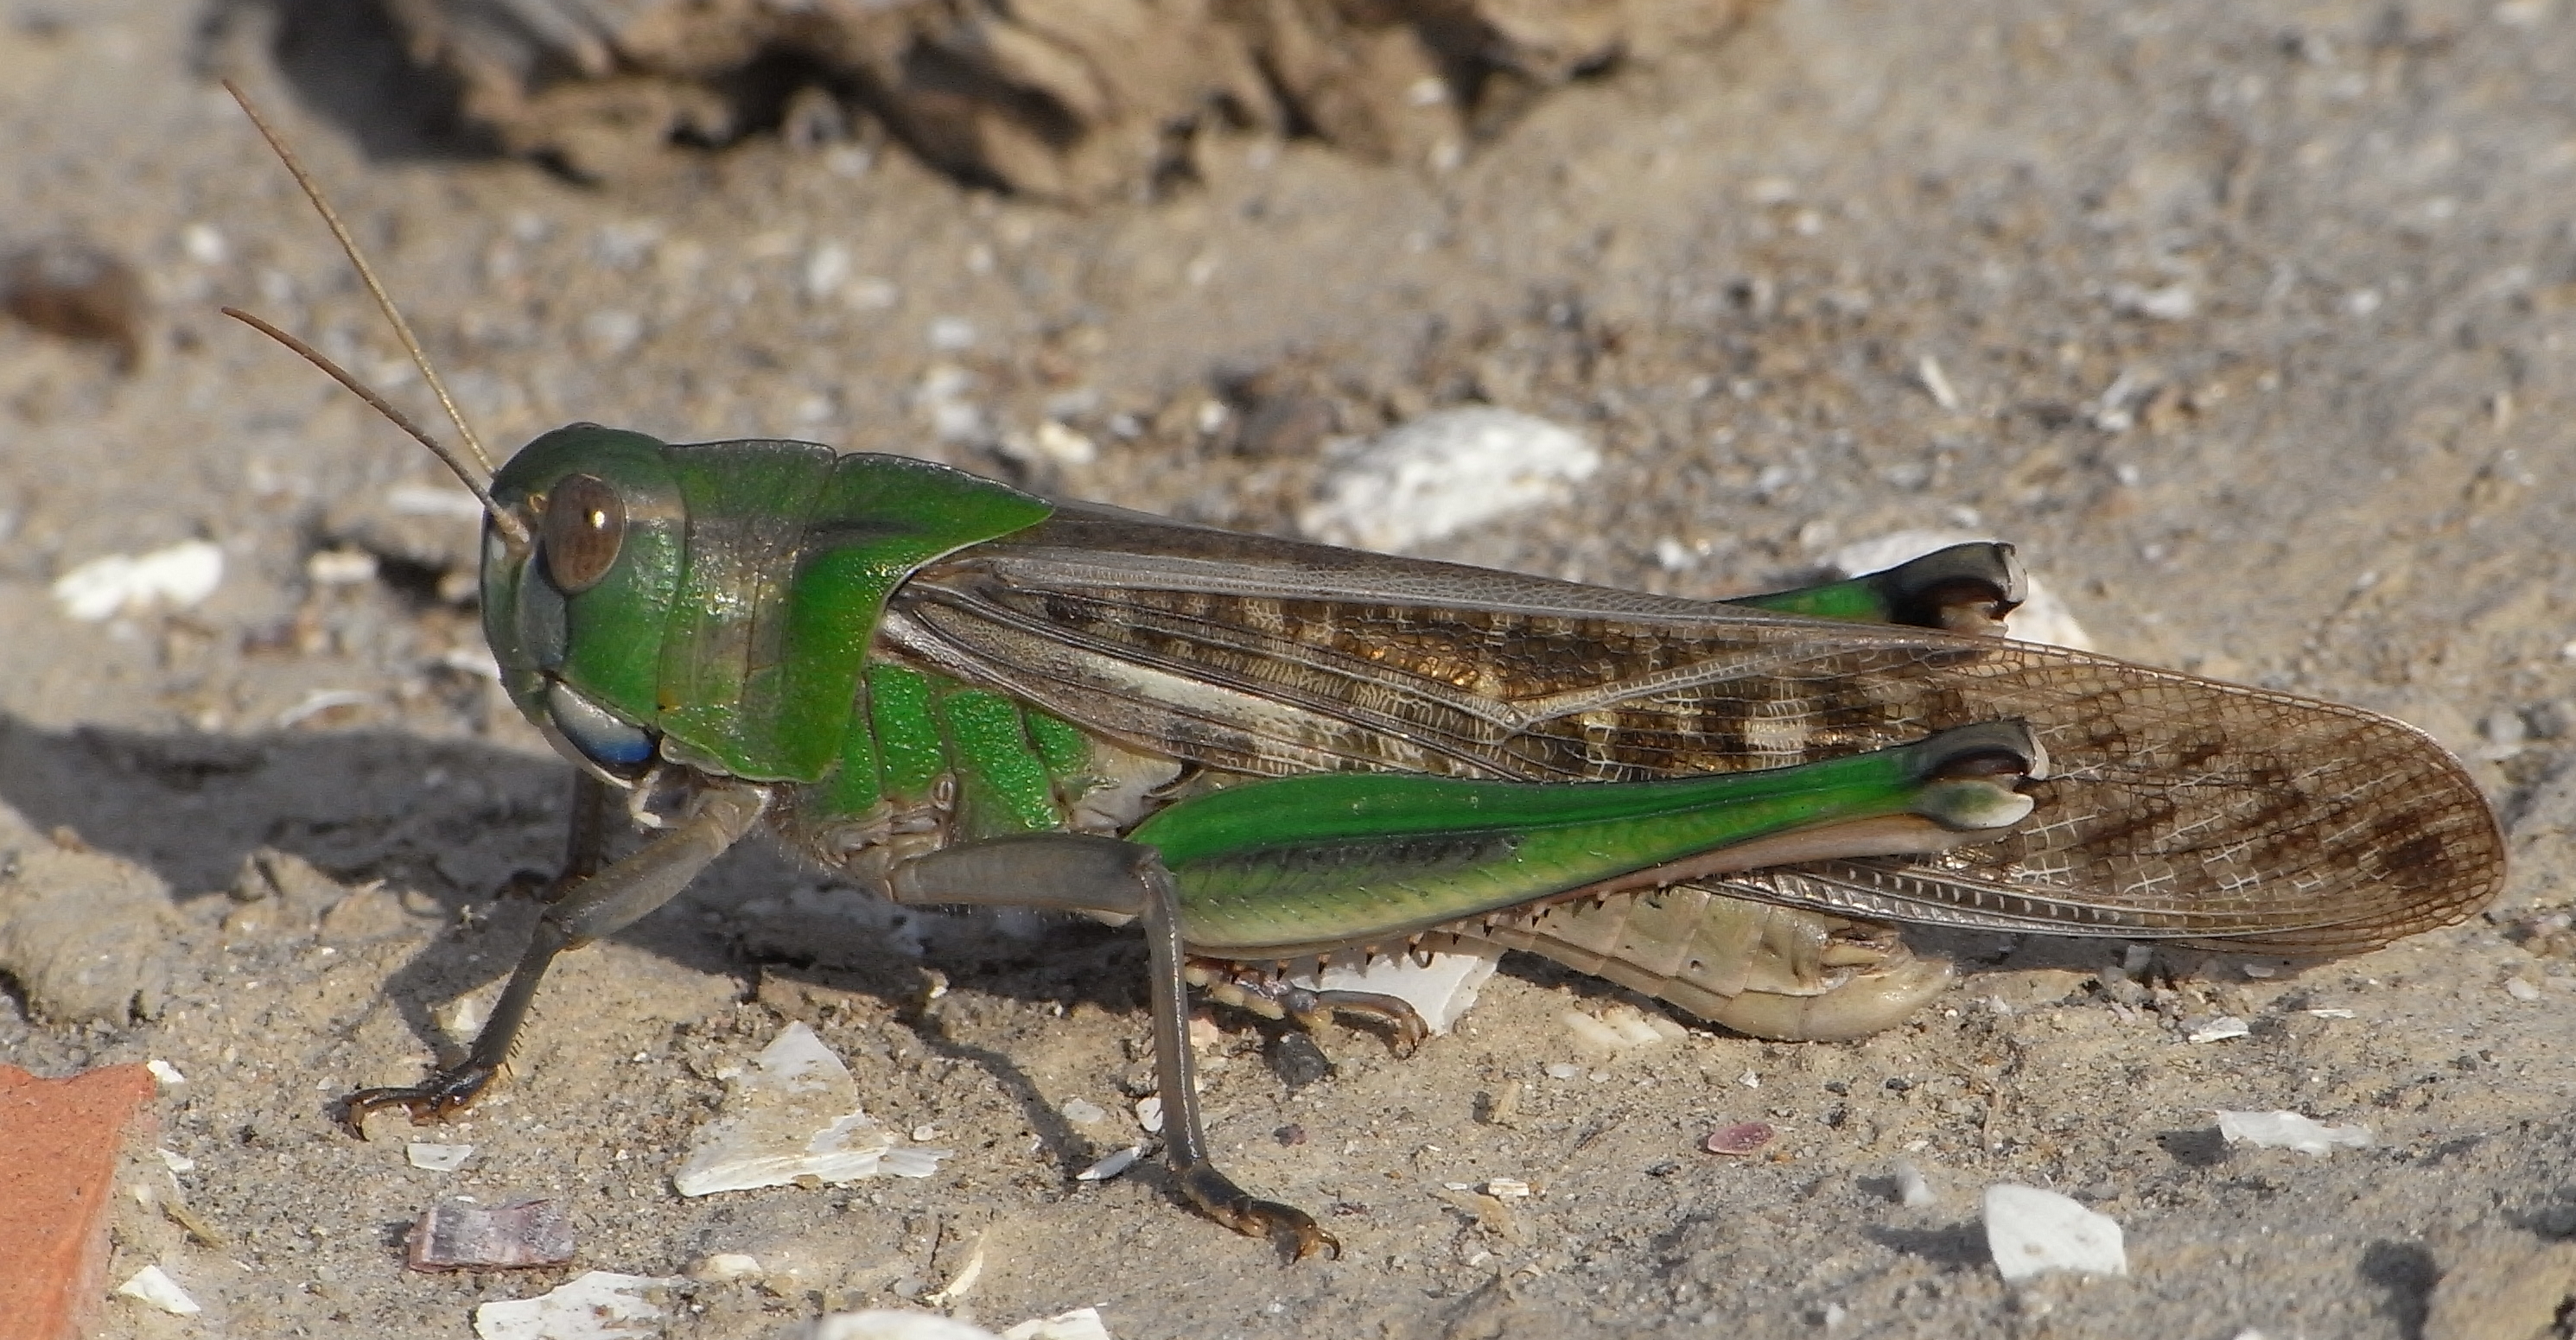 AgroAtlas - Pests - Locusta migratoria L. - Migratory Locust